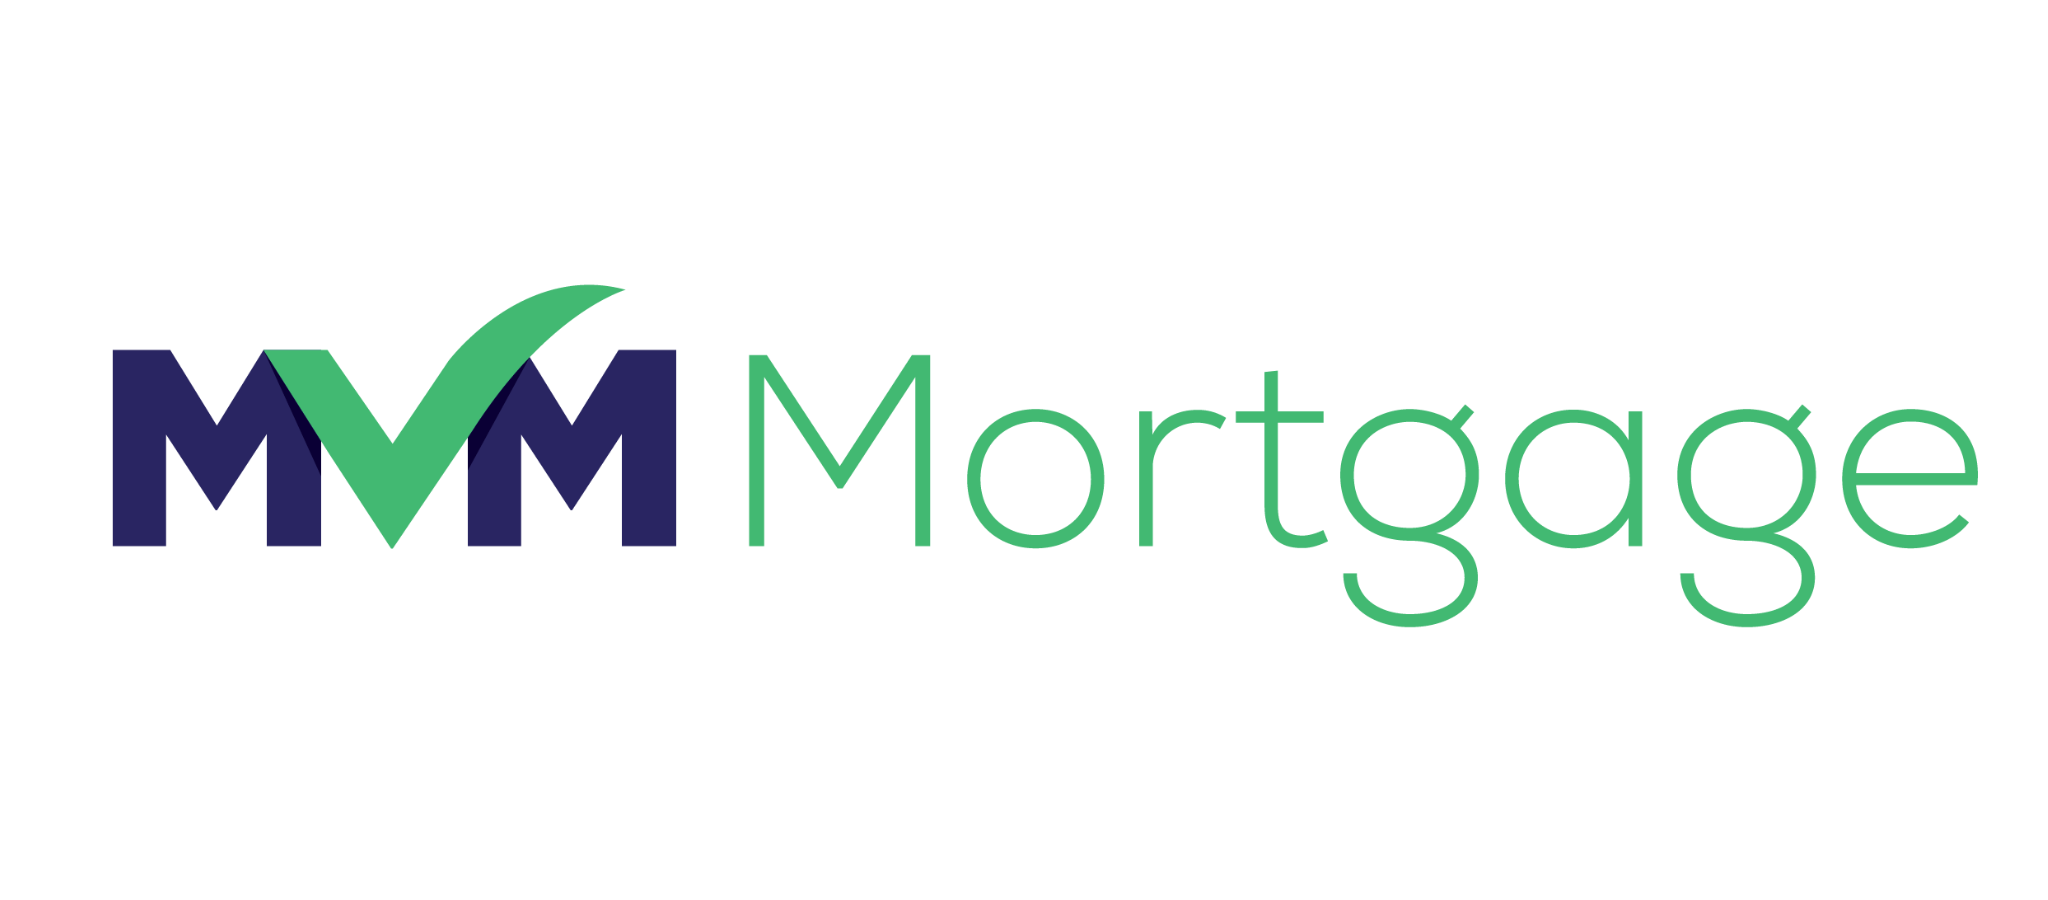 MVM MortgageFAQ